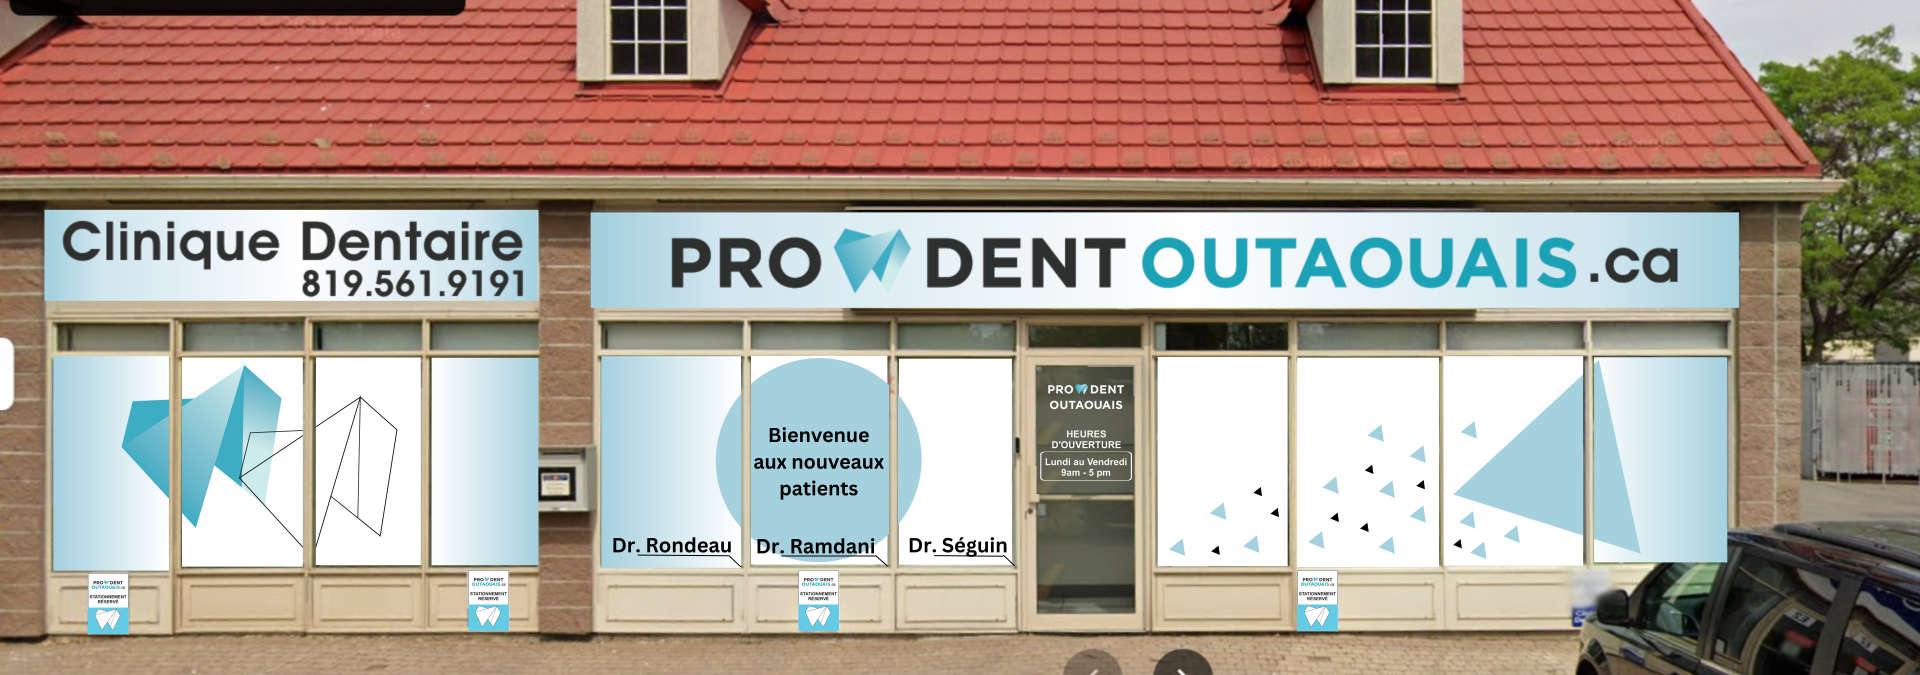 Clinique dentaire Prodent Outaouais